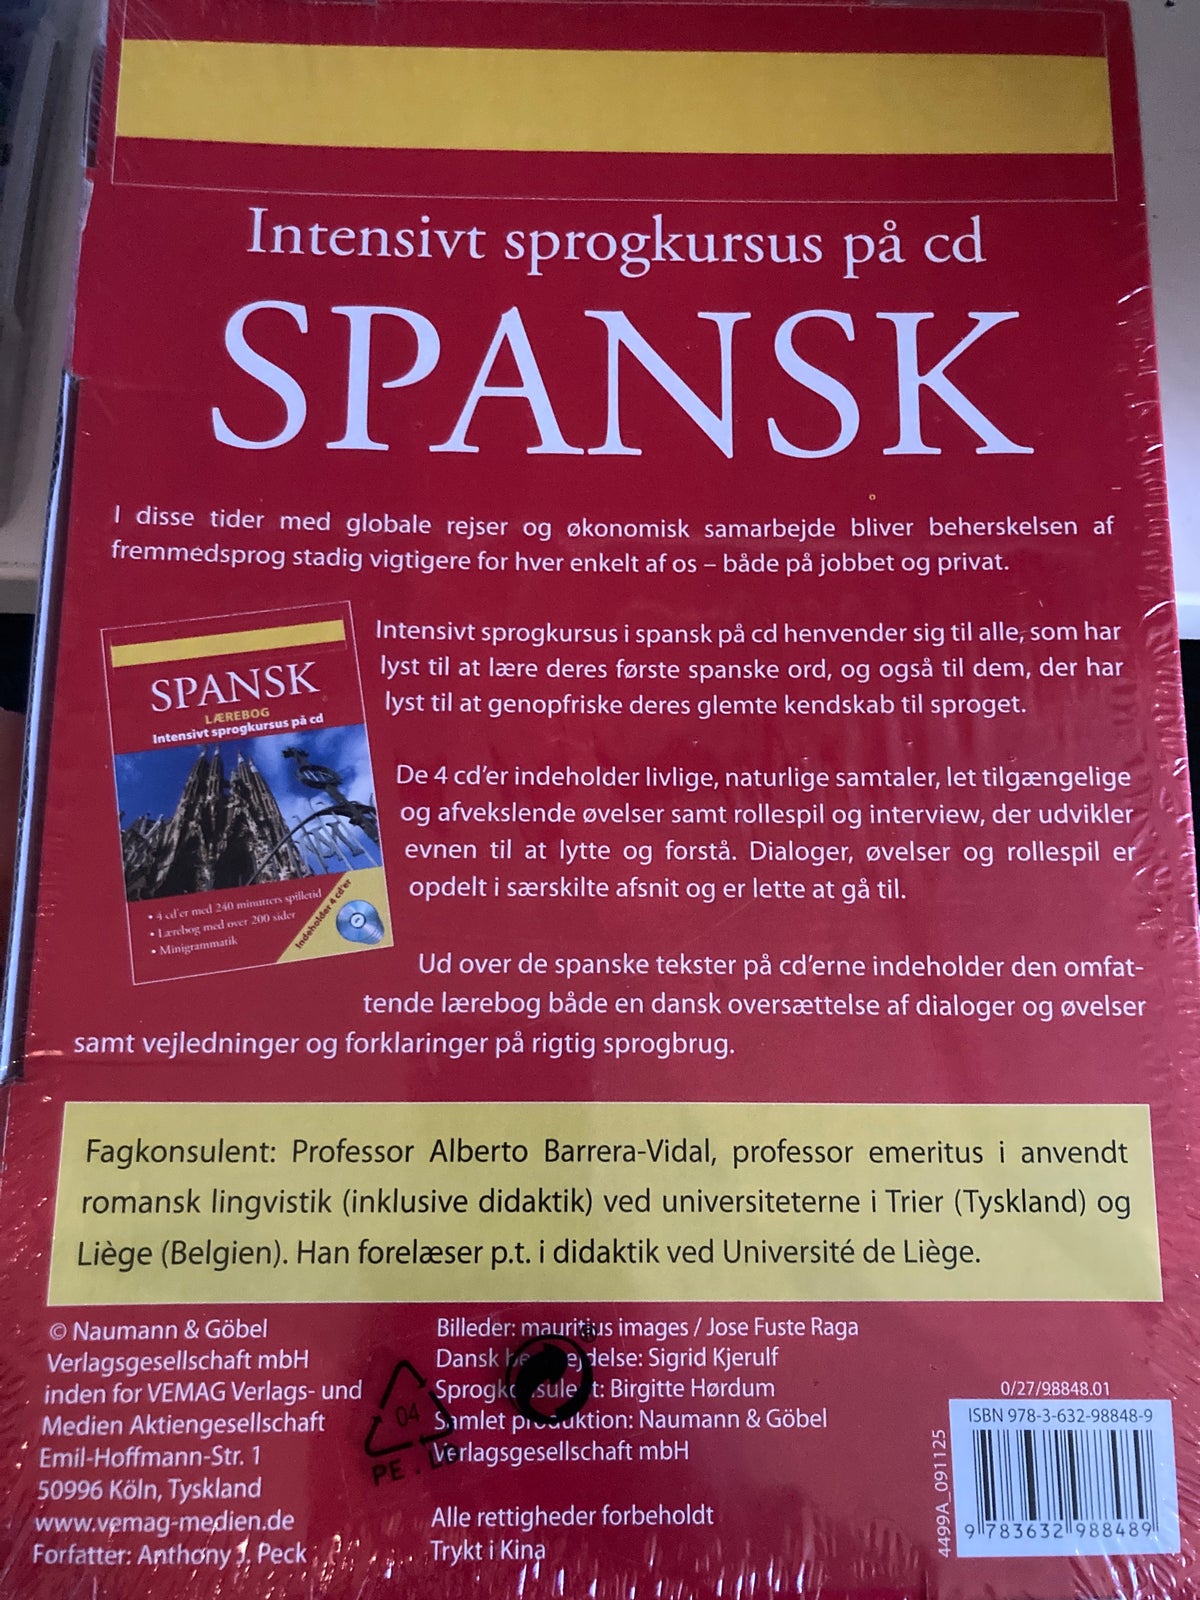 Spansk intensivt sprogkursus, På CD